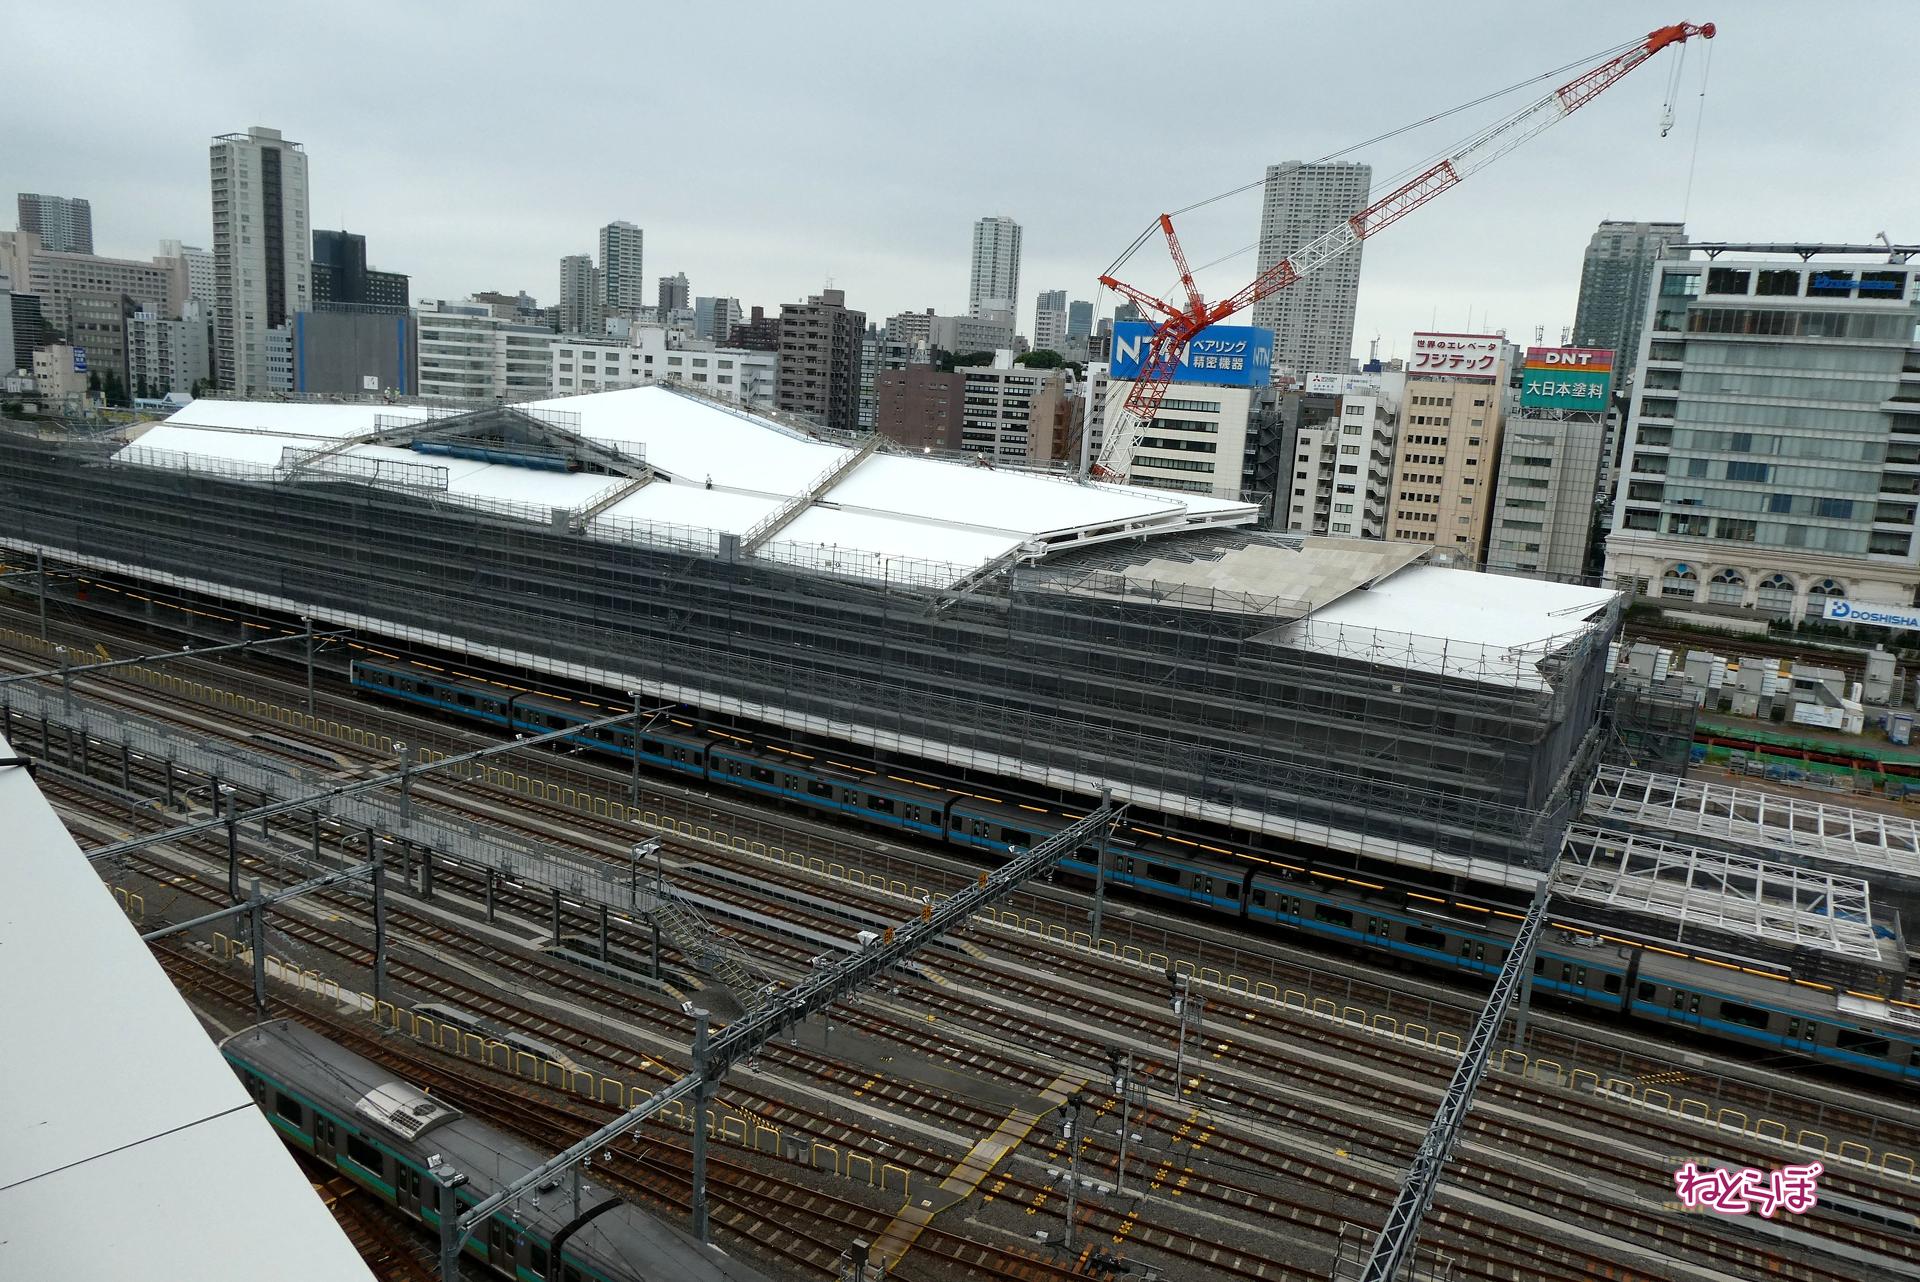 絶好の 新幹線撮影スポット できるかも 品川新駅周辺にできる 新 鉄道ビュースポット を考察 1 3 ねとらぼ